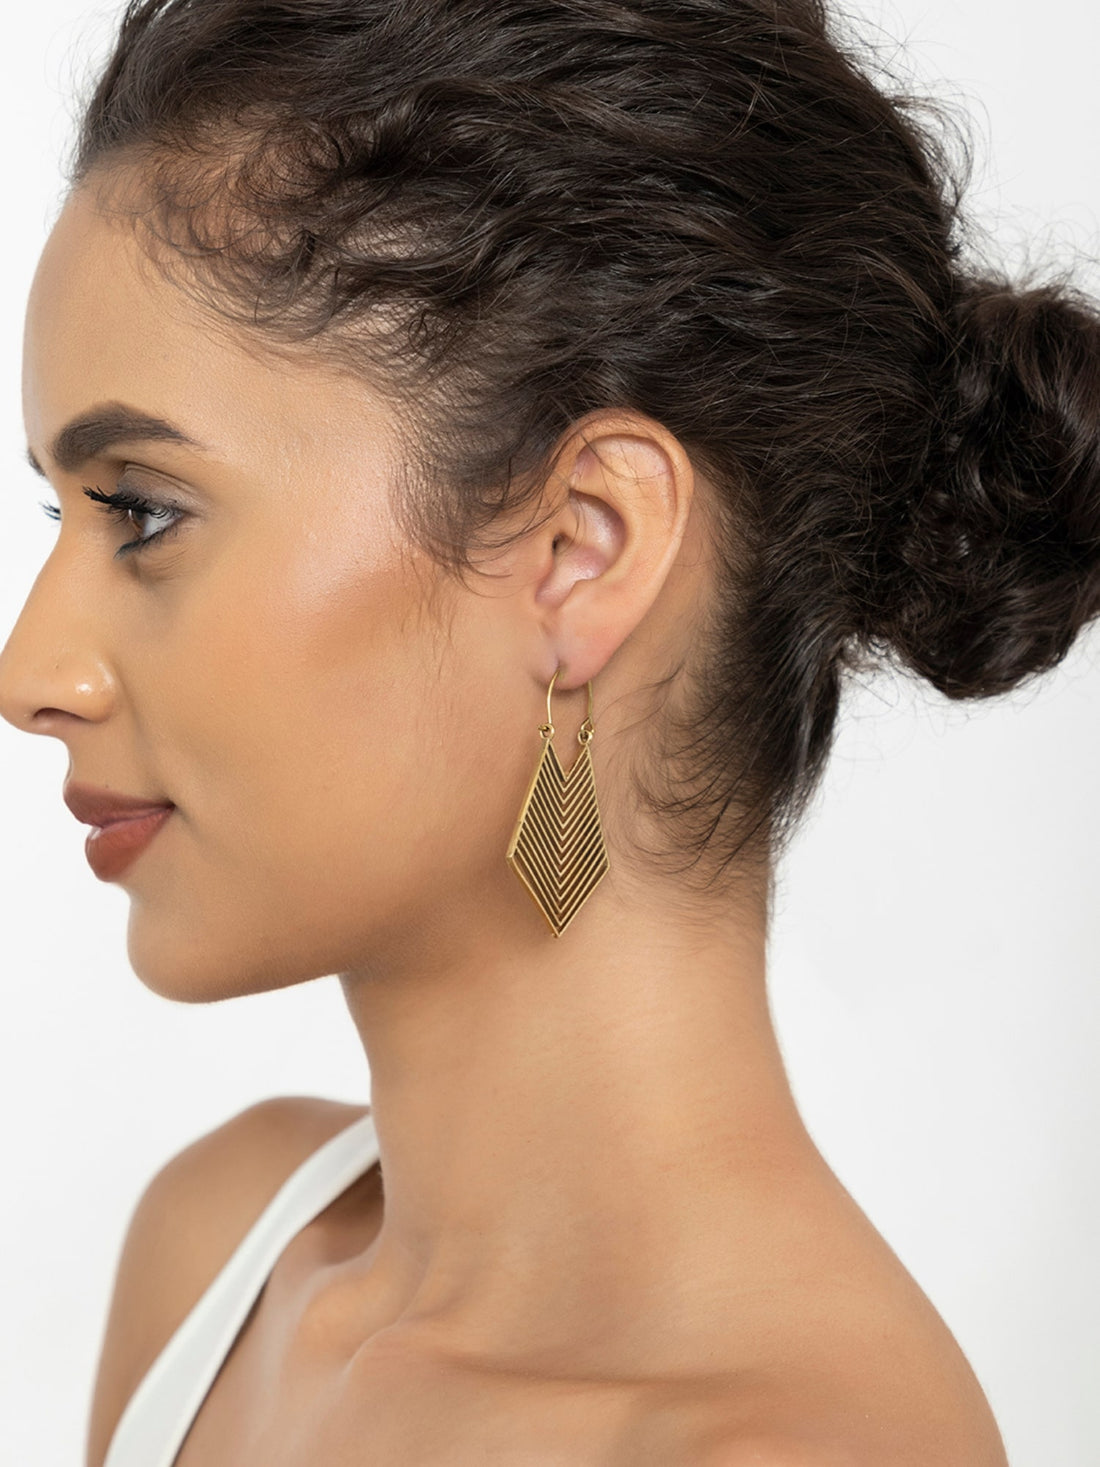 Daily Wear Hoops Earrings - Minimal Gold-Plated Brass Earrings By Studio One Love